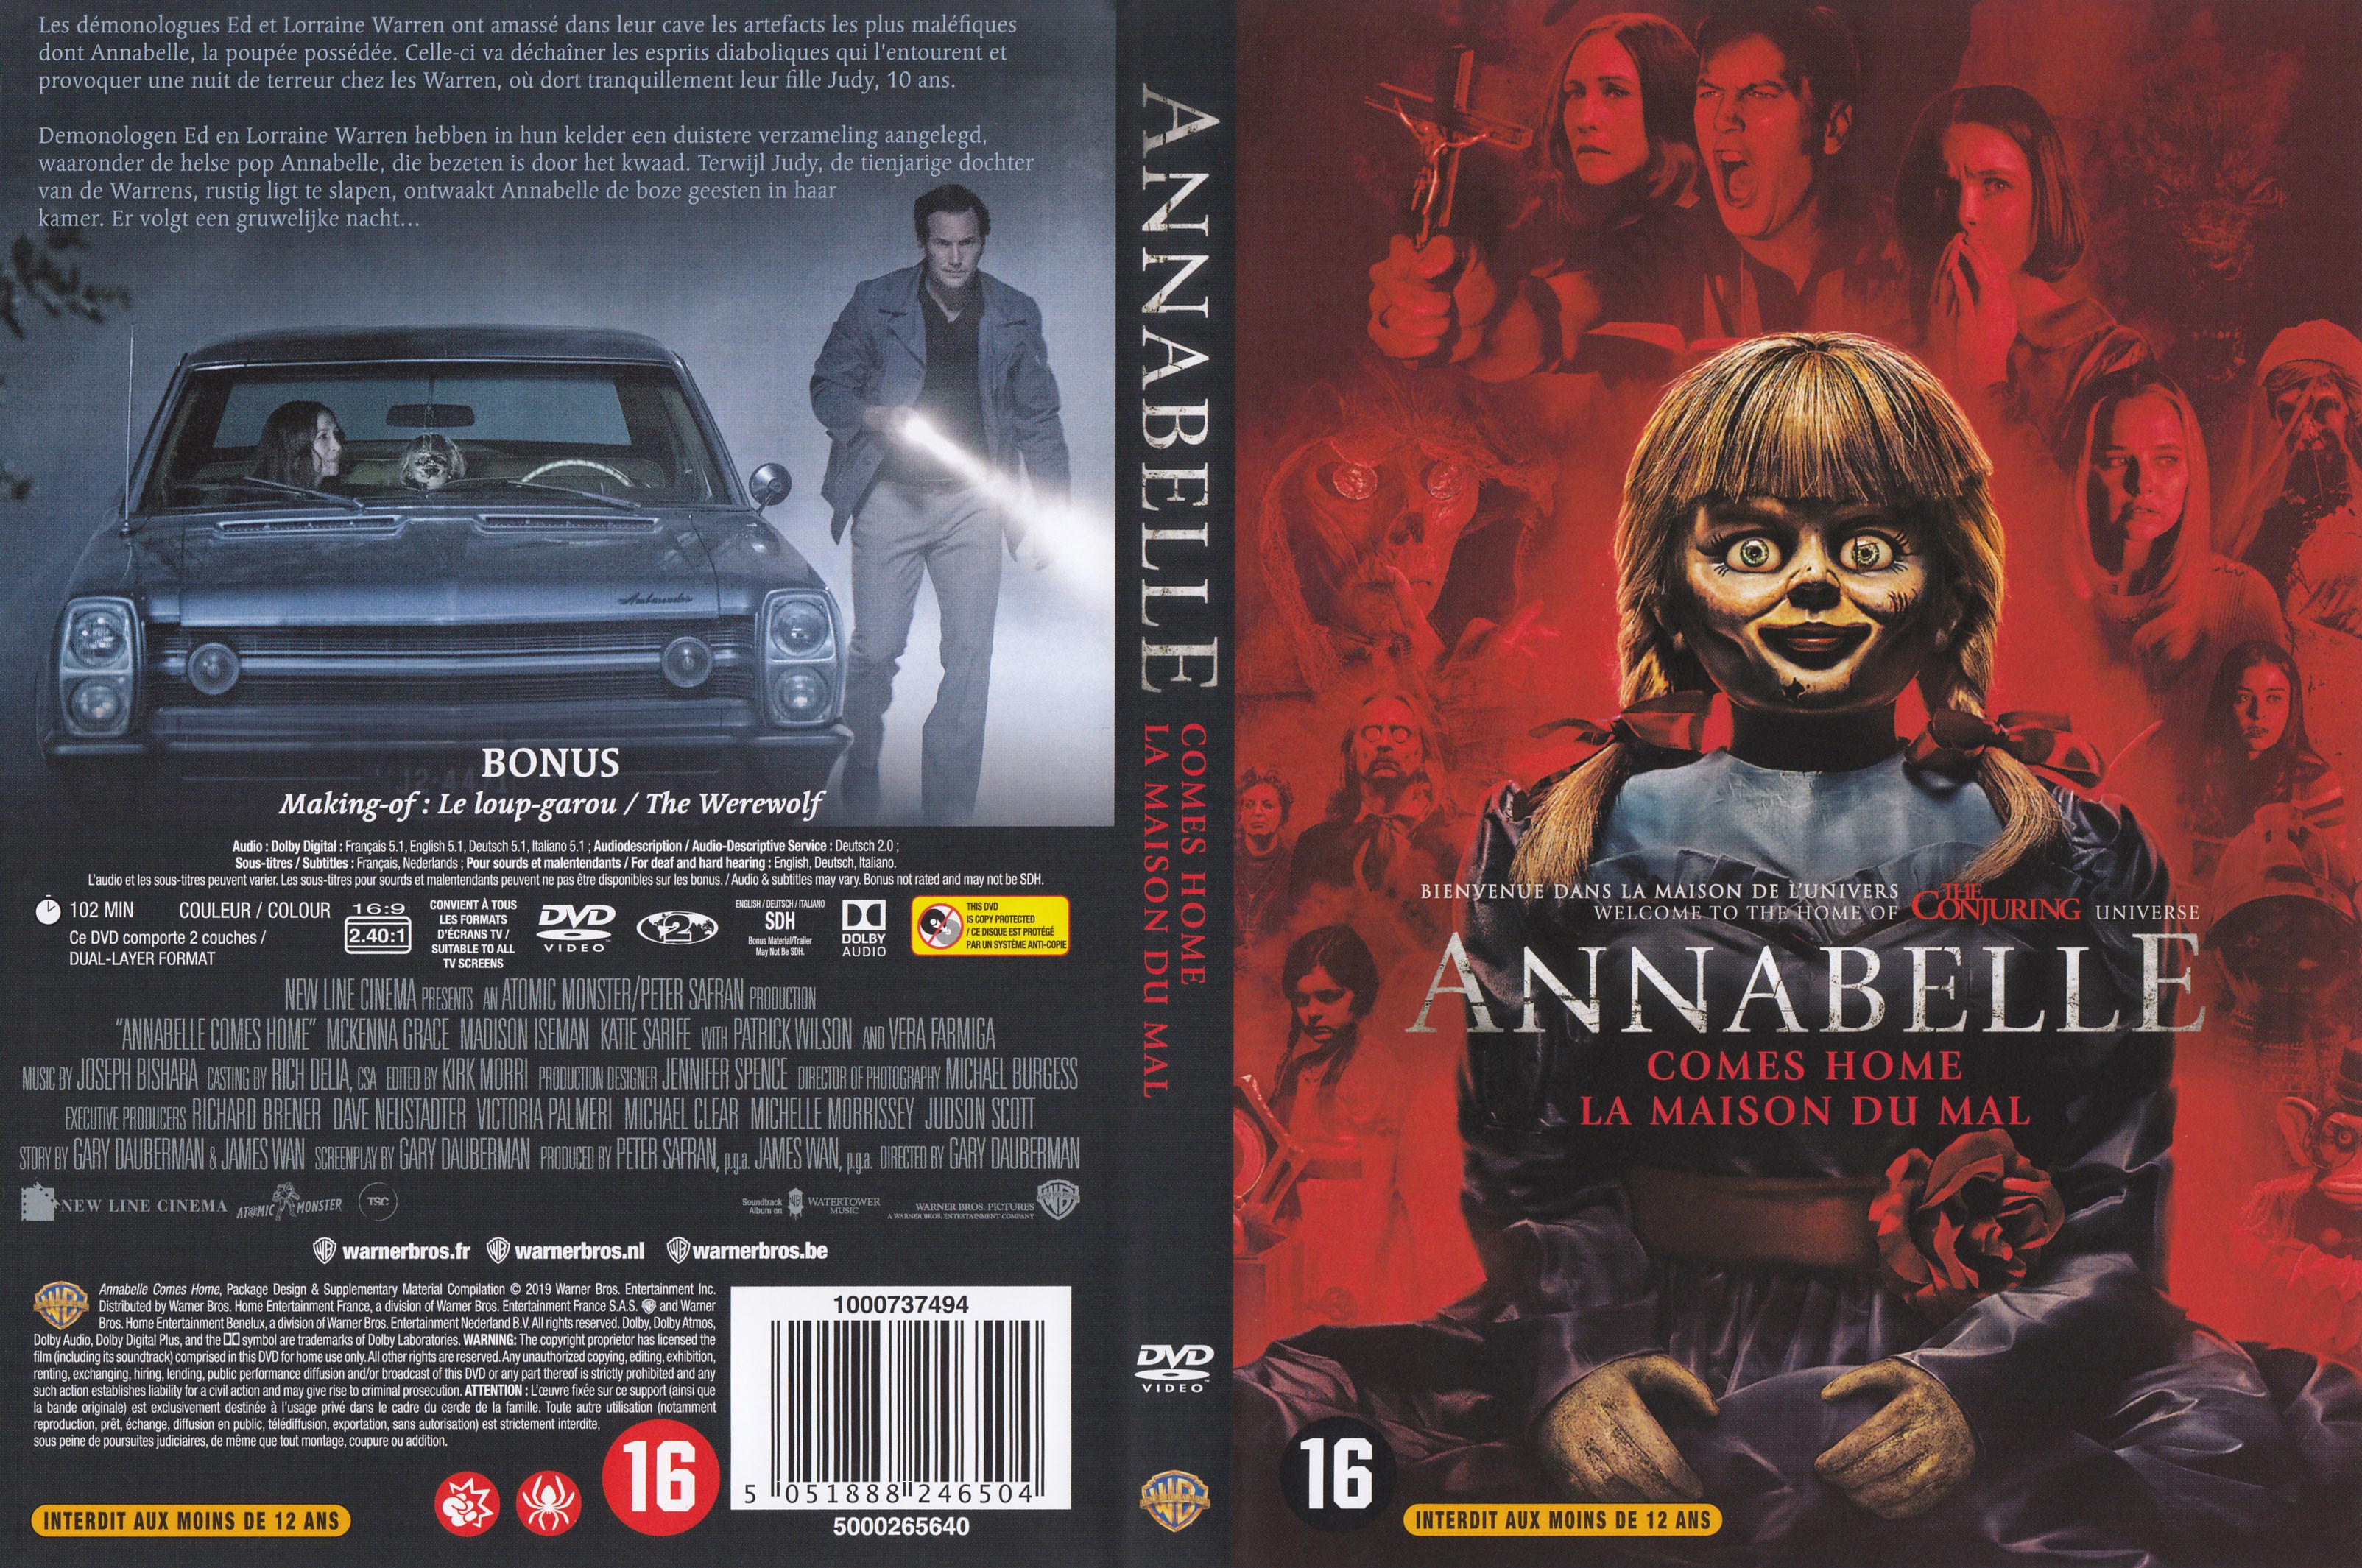 Jaquette DVD Annabelle La maison du mal